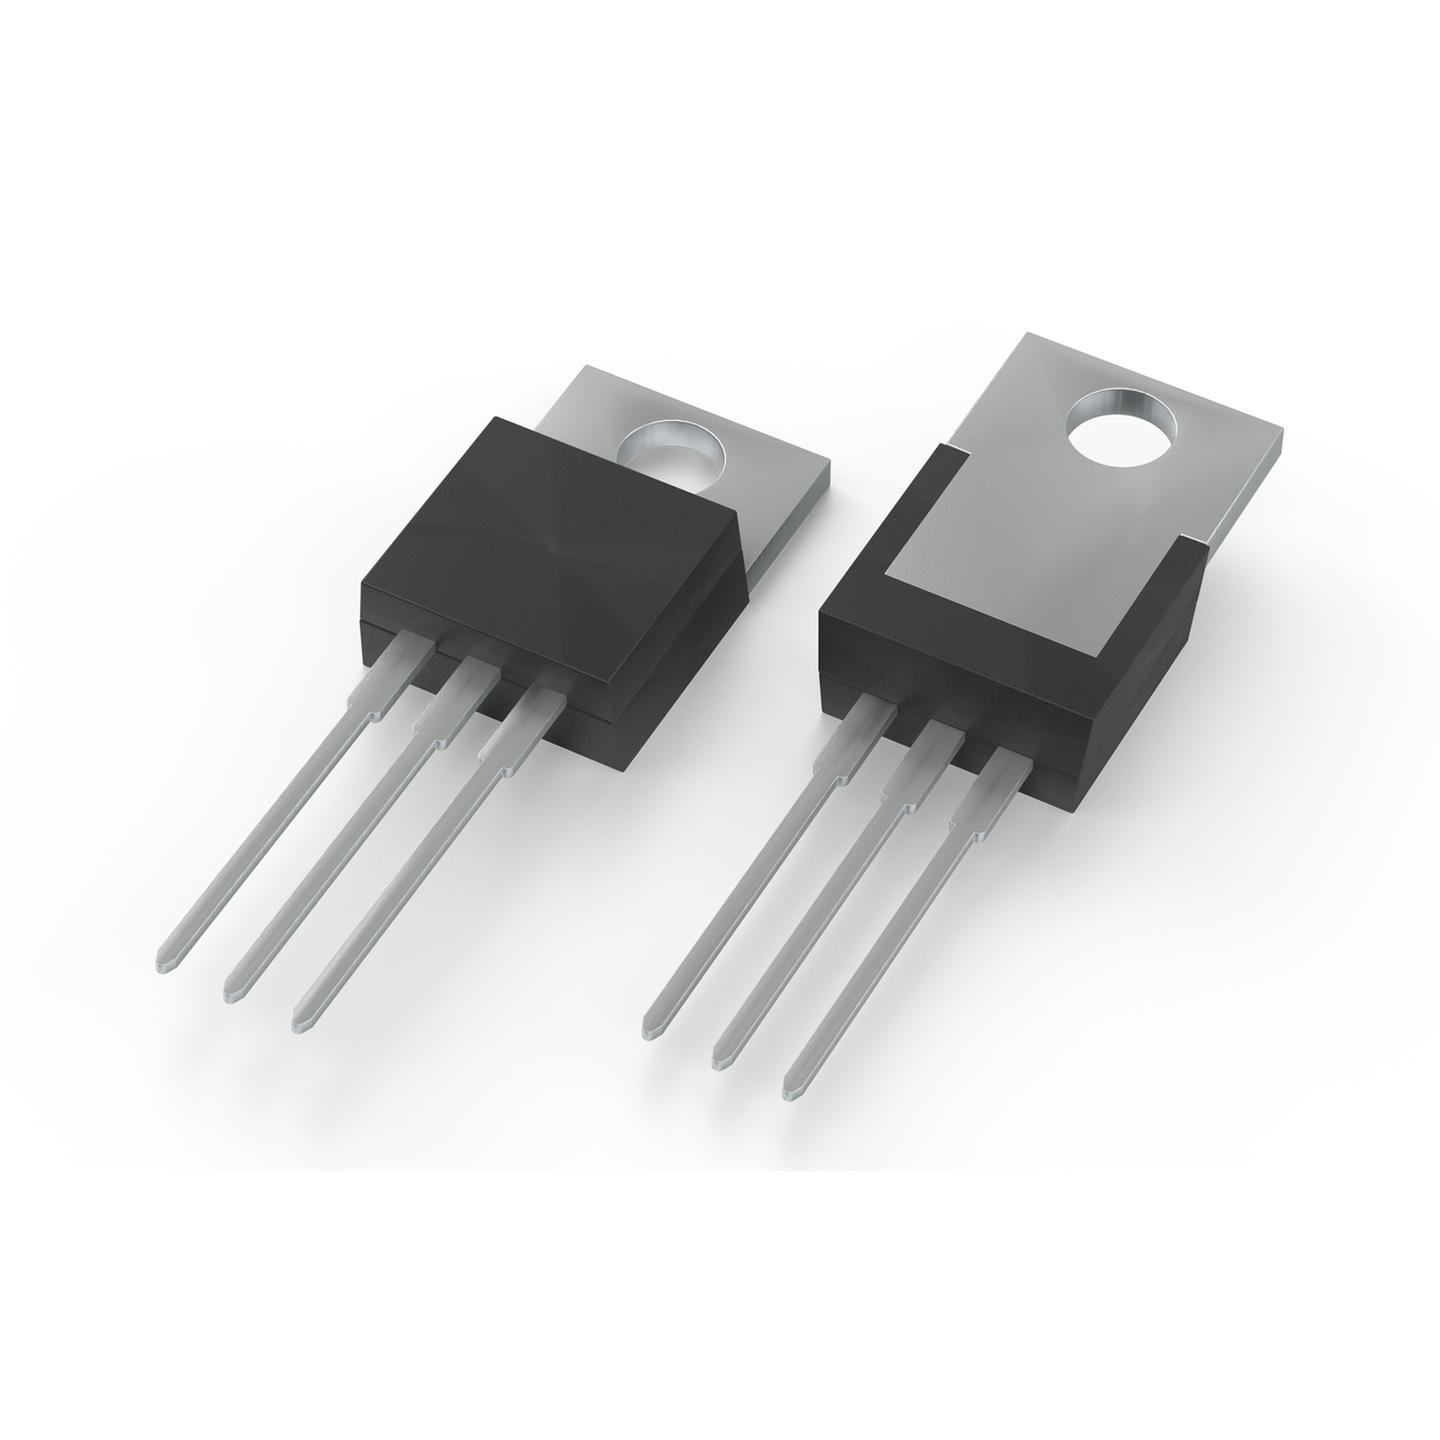 MJE3055 NPN Transistor